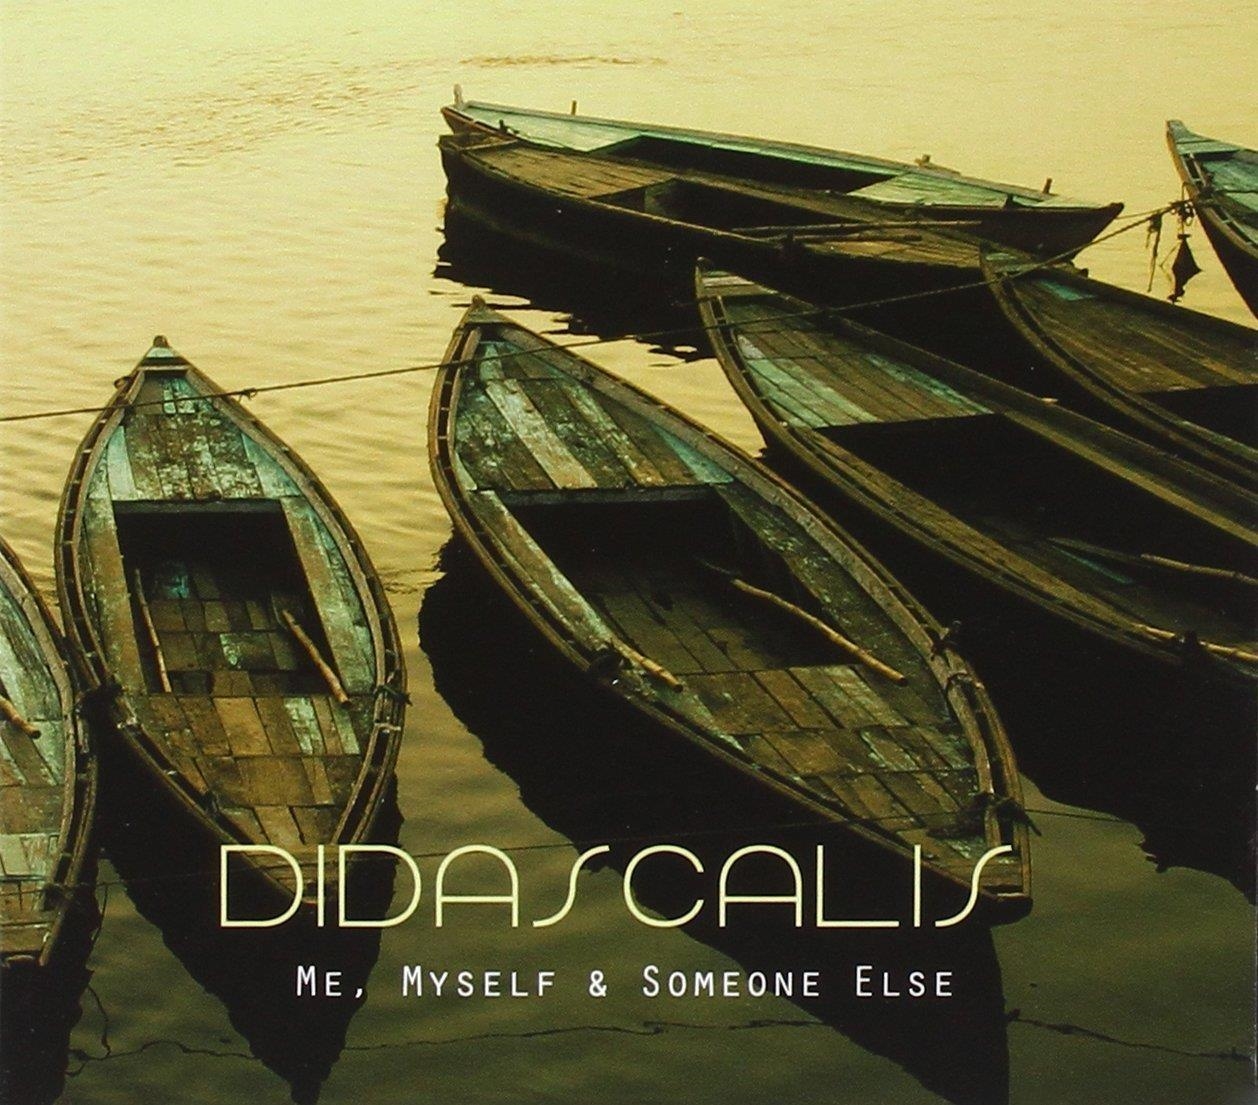 Audio Cd Didascalis - Me, Myself & Someone Else (2 Cd) NUOVO SIGILLATO, EDIZIONE DEL 09/09/2014 SUBITO DISPONIBILE